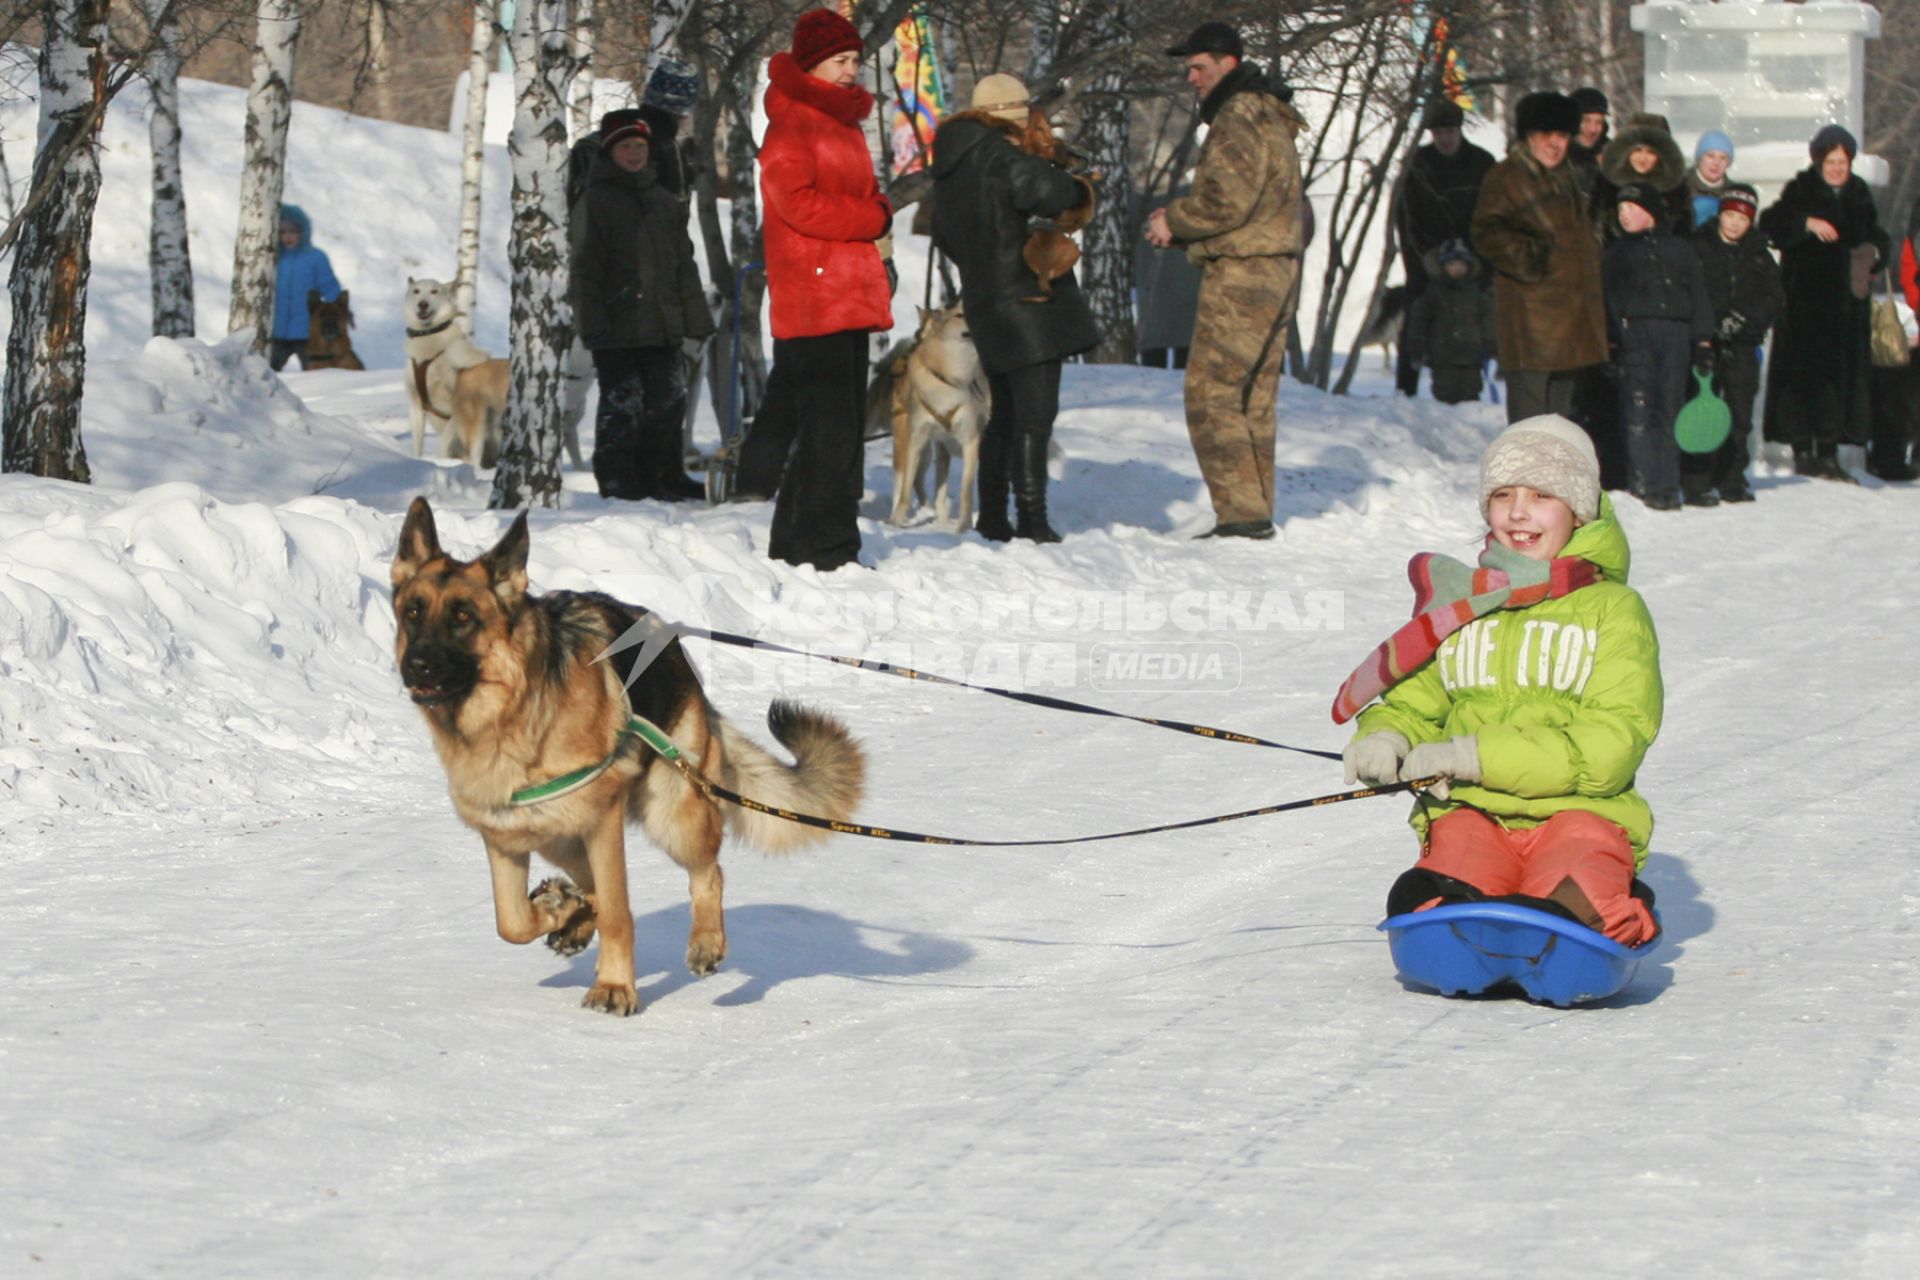 Гонки на собачьих упряжках в Барнауле. На снимке: ребенок на ледянке с запряженной собакой породы овчарка.